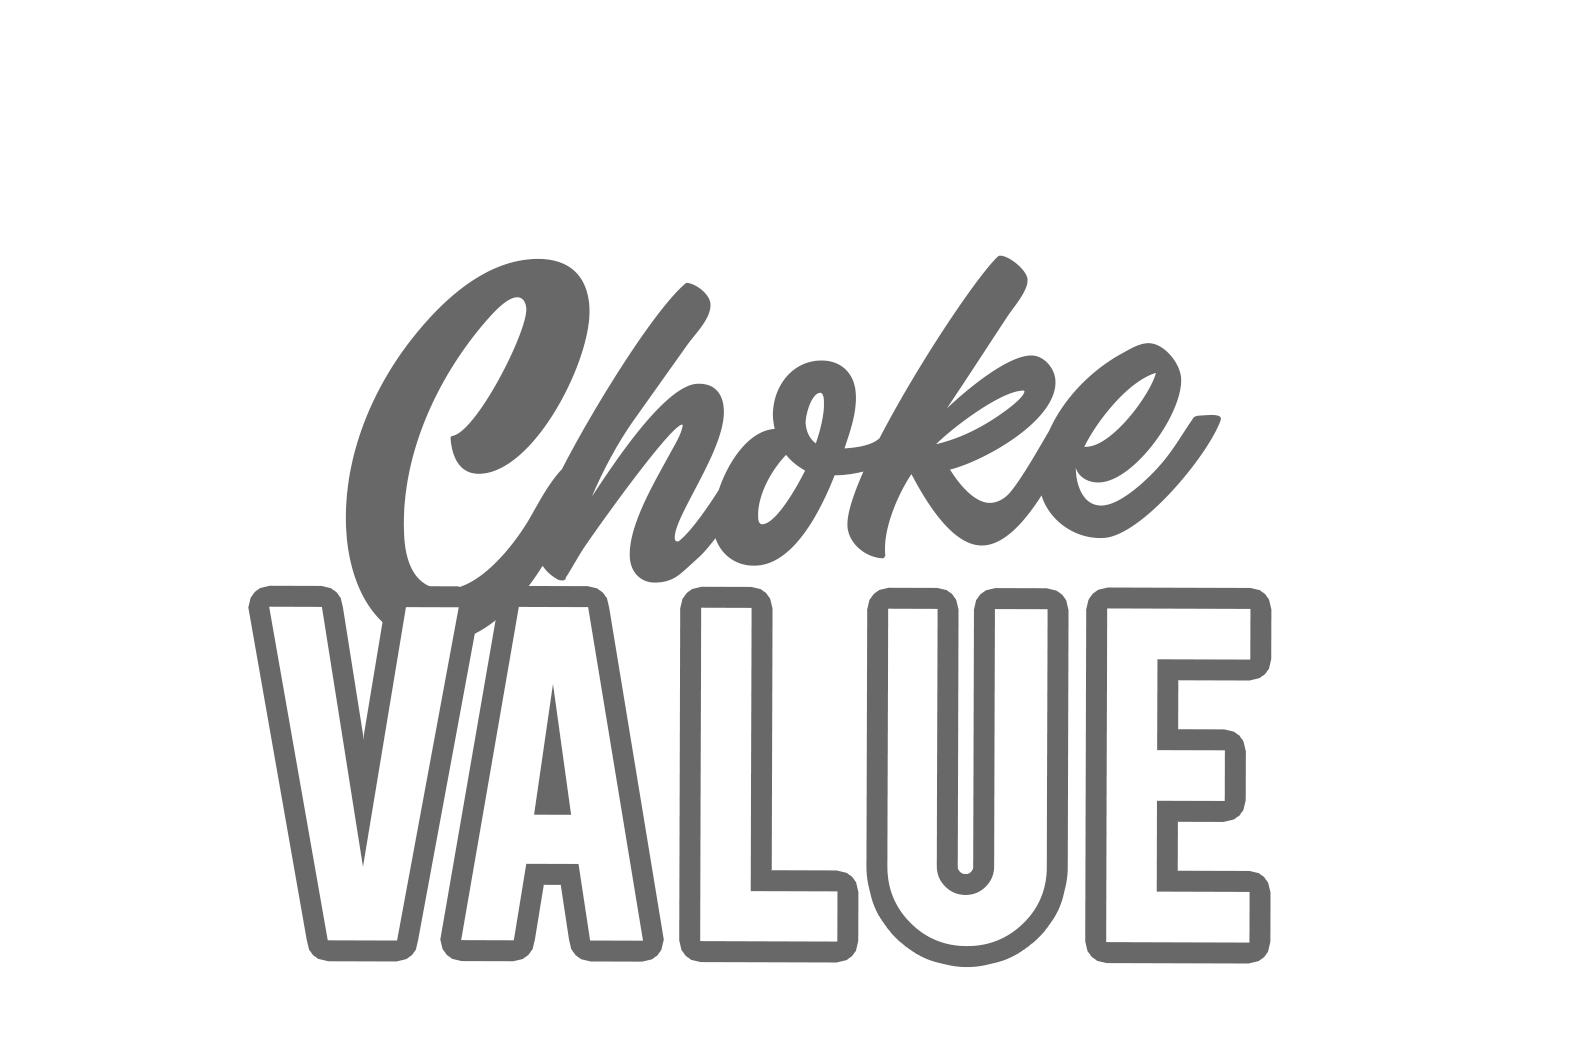 Choke Value